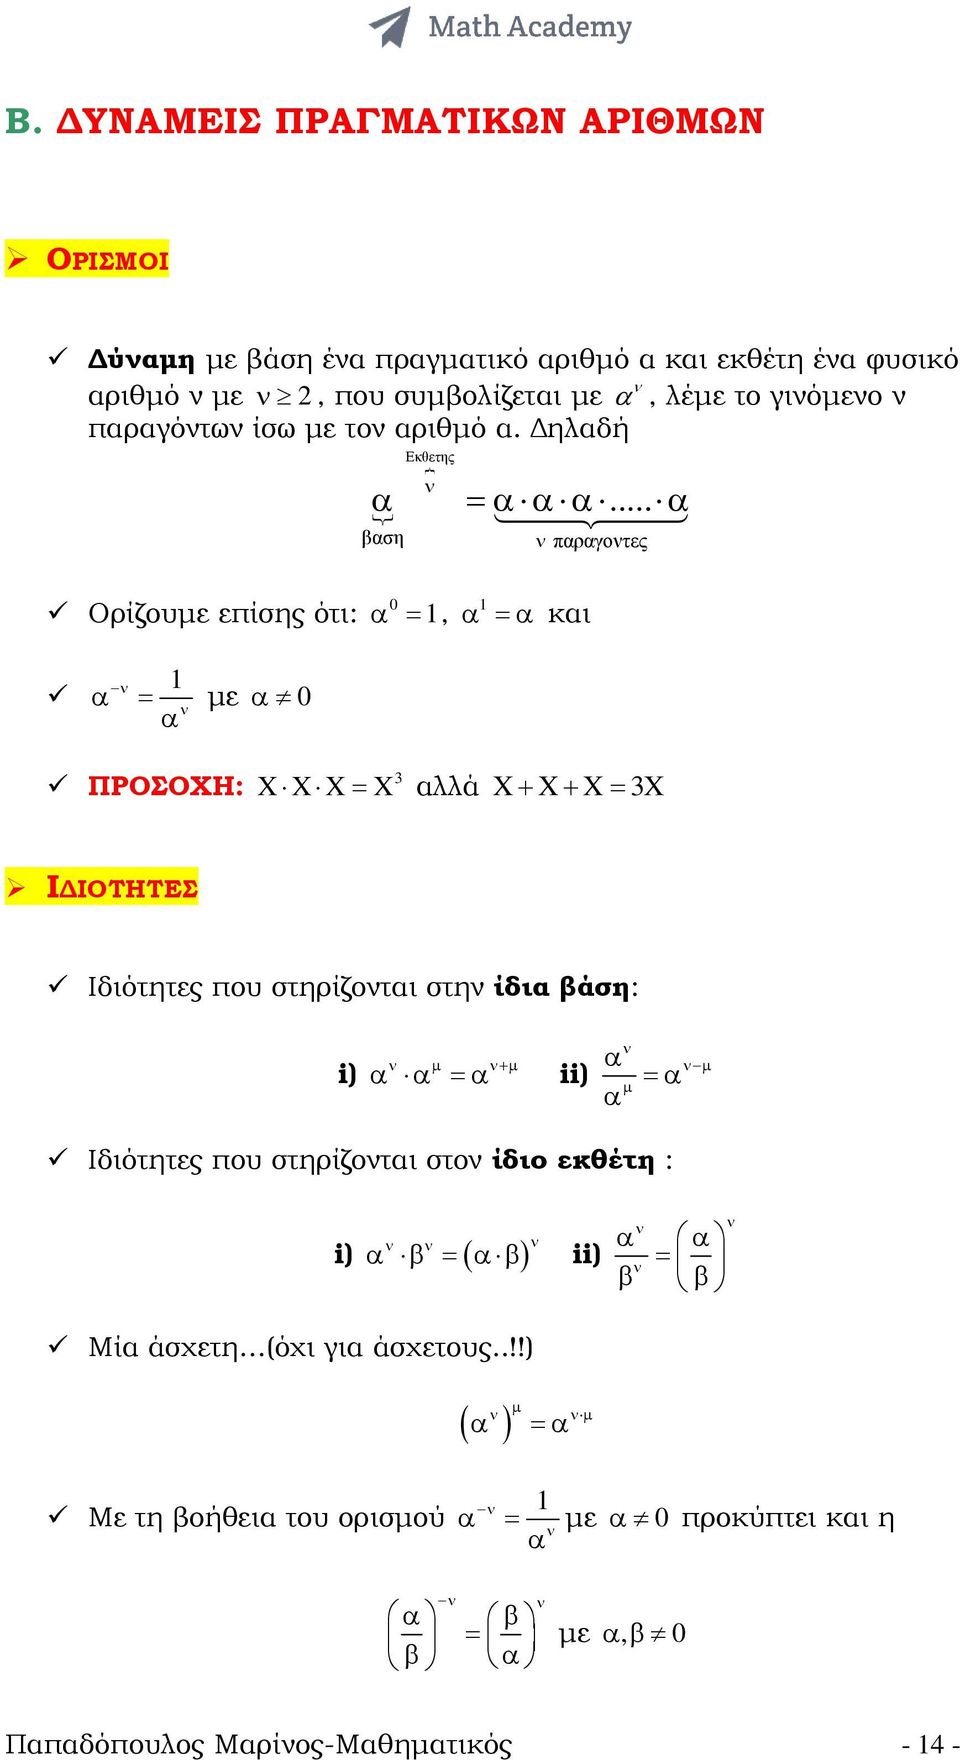 .. α βαση νπαραγοντες Ορίζουµε επίσης ότι: 0 α =, α =α και ν α = µε α 0 α ν ΠΡΟΣΟΧΗ: = X αλλά X+ X+ X= X X X X Ι ΙΟΤΗΤΕΣ Ιδιότητες που στηρίζονται στην ίδια βάση: i)